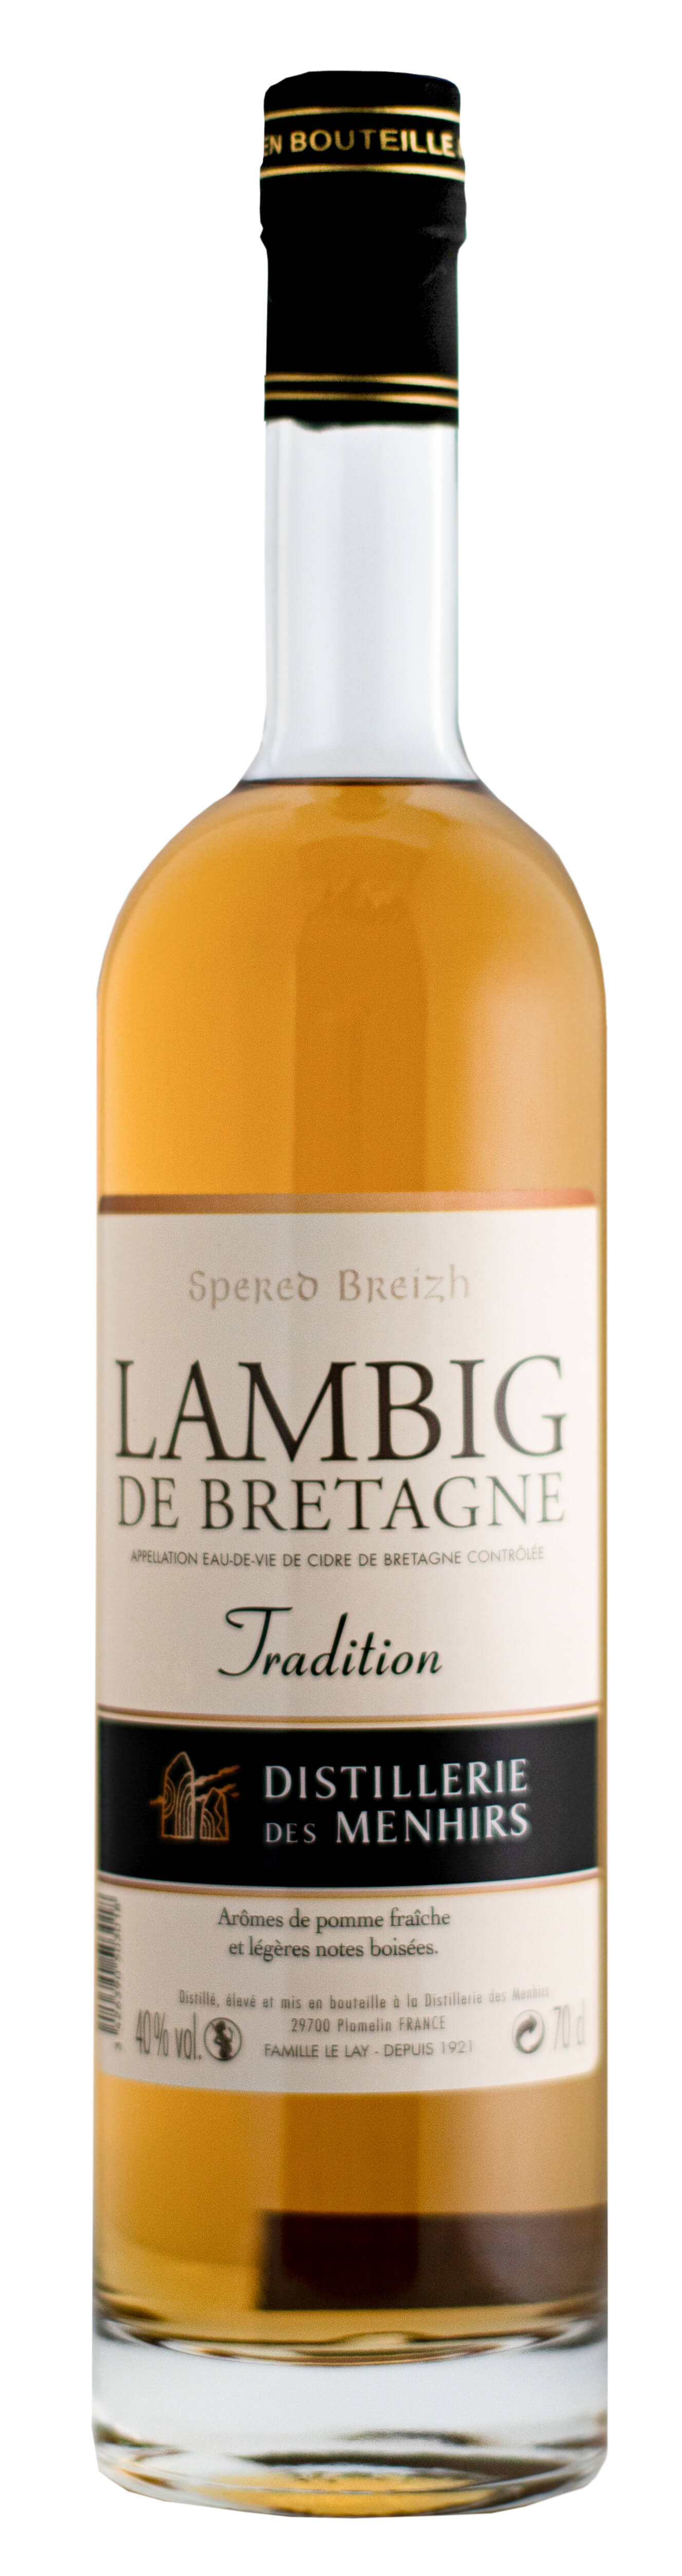 Lambig de Bretagne Tradition - 0,7L 40% vol